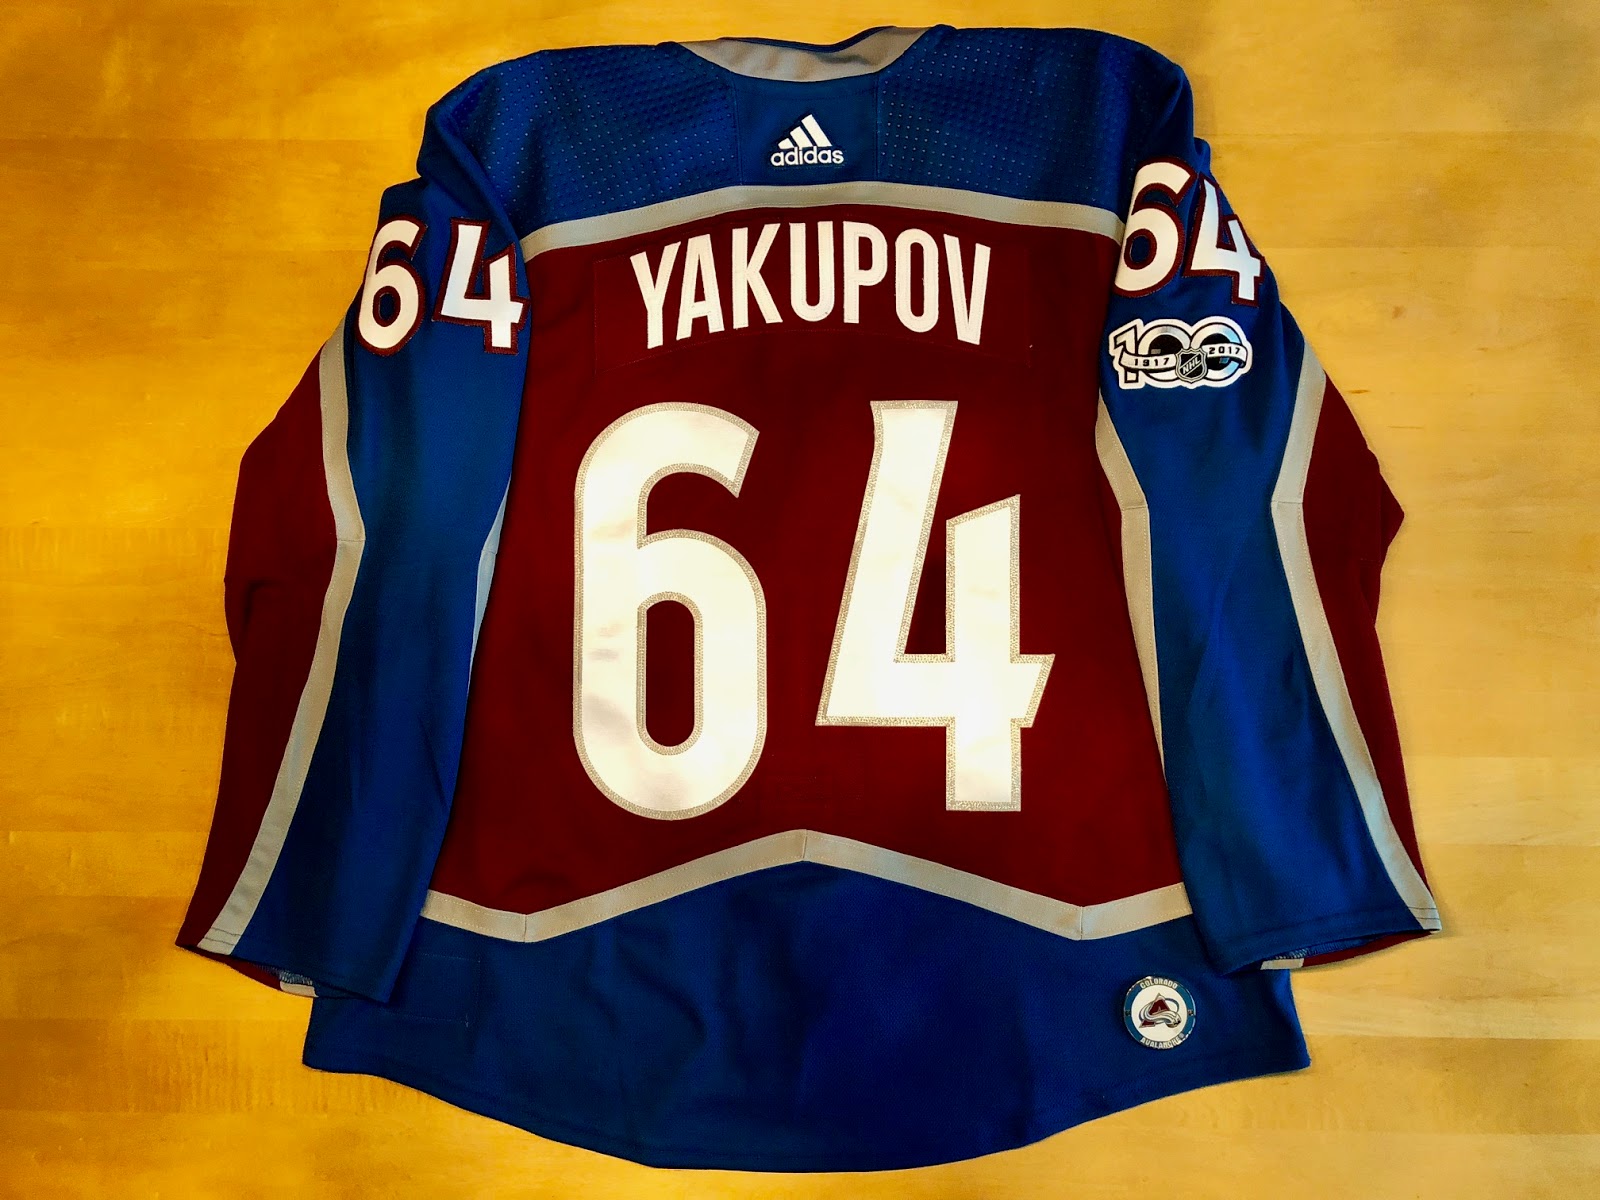 3. Colorado Avalanche acquire Nail Yakupov - wide 8